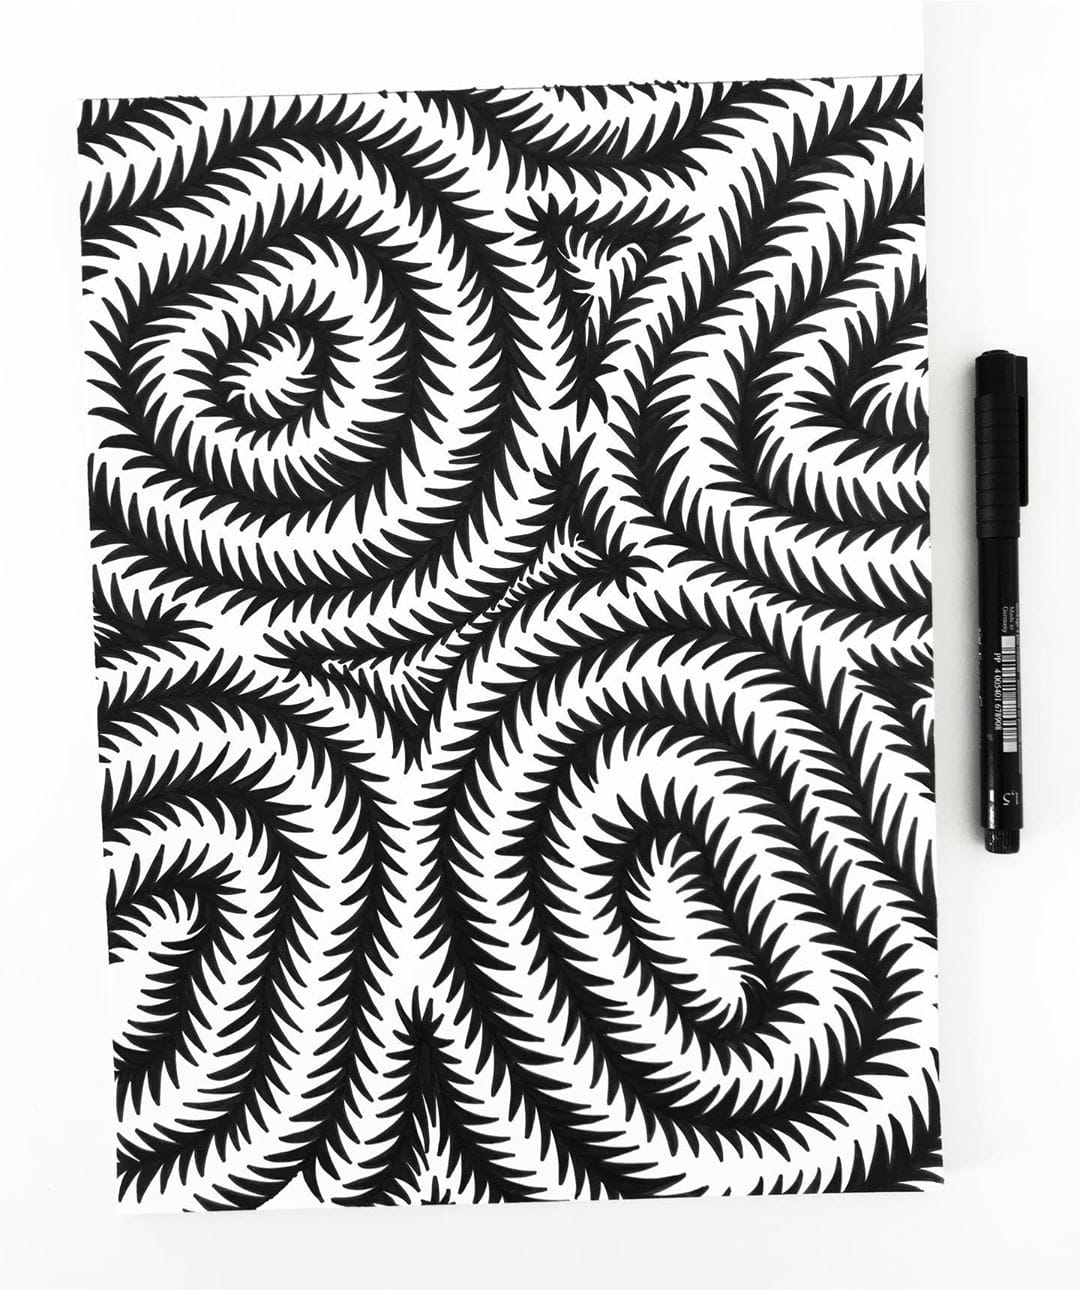 dessin hypnotique noir et blanc barbelés forme feutre 